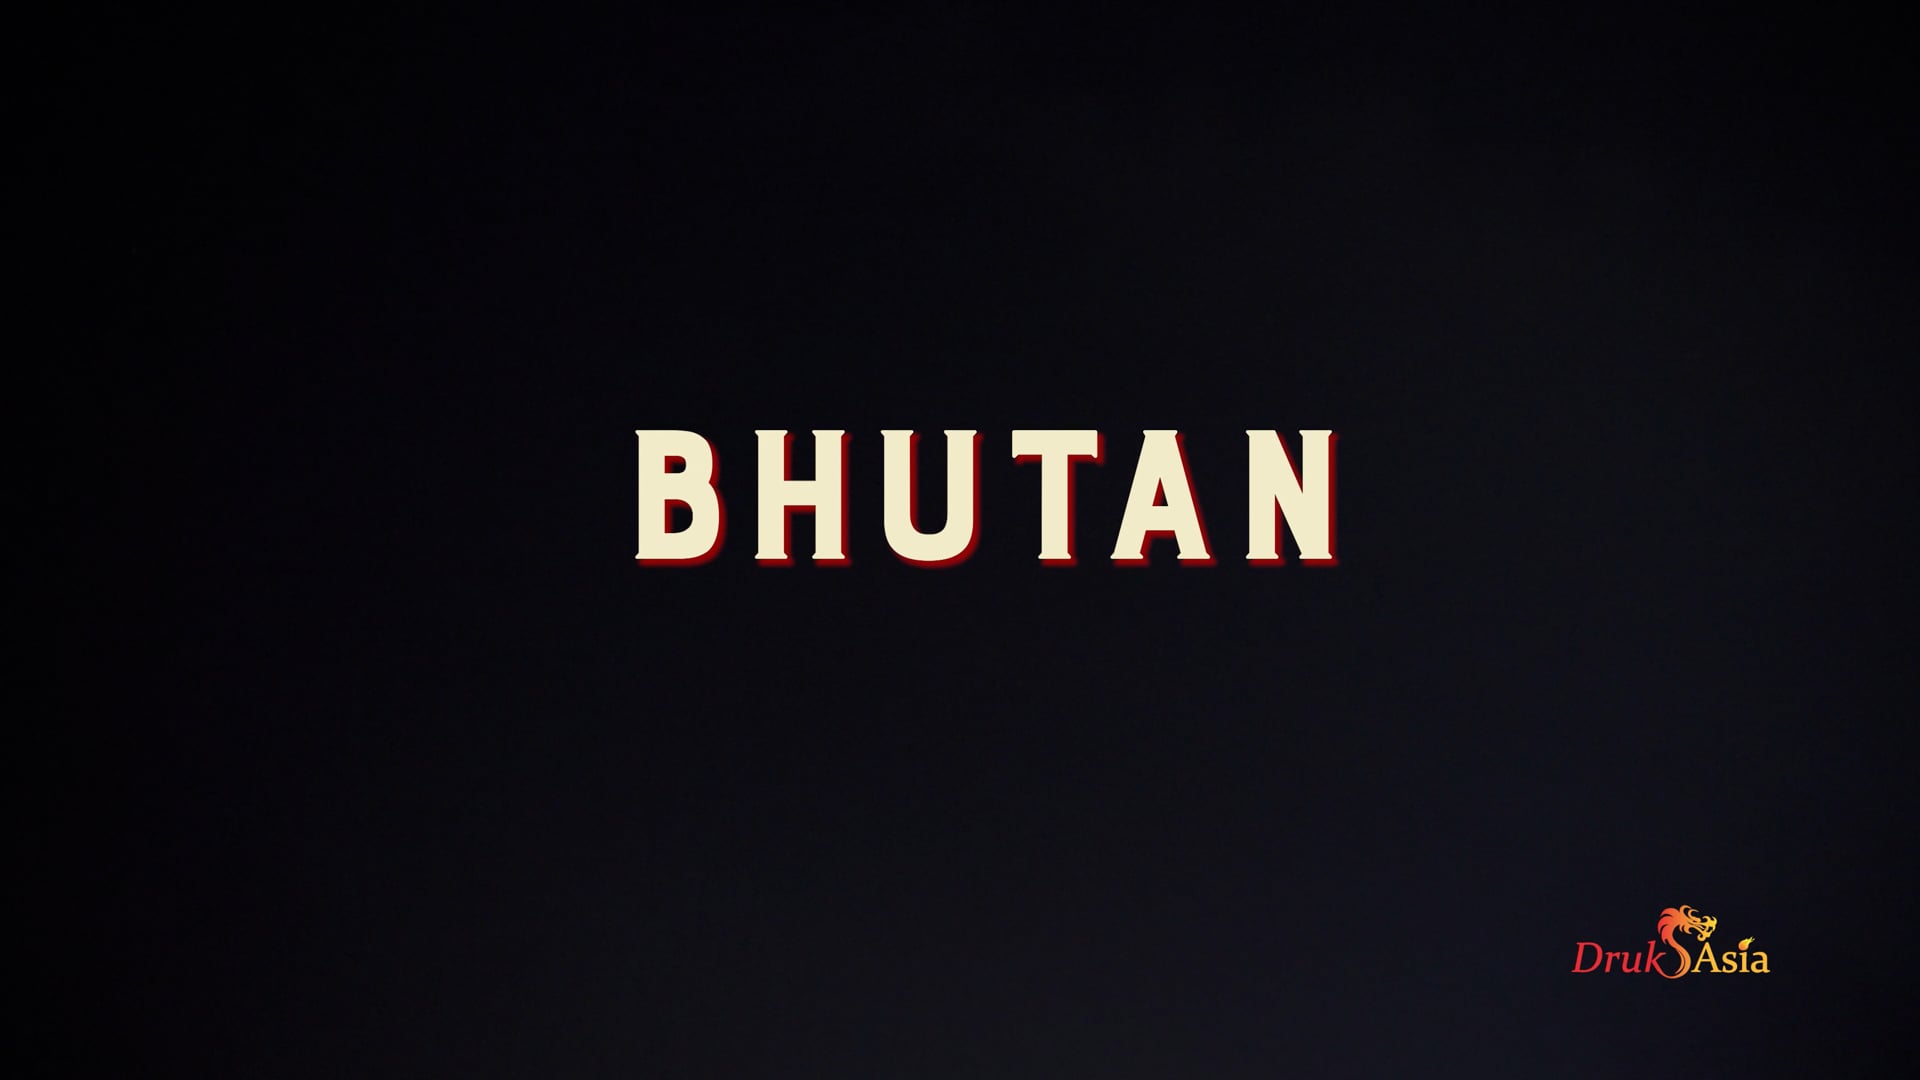 DrukAsia-- Bhutan 2021